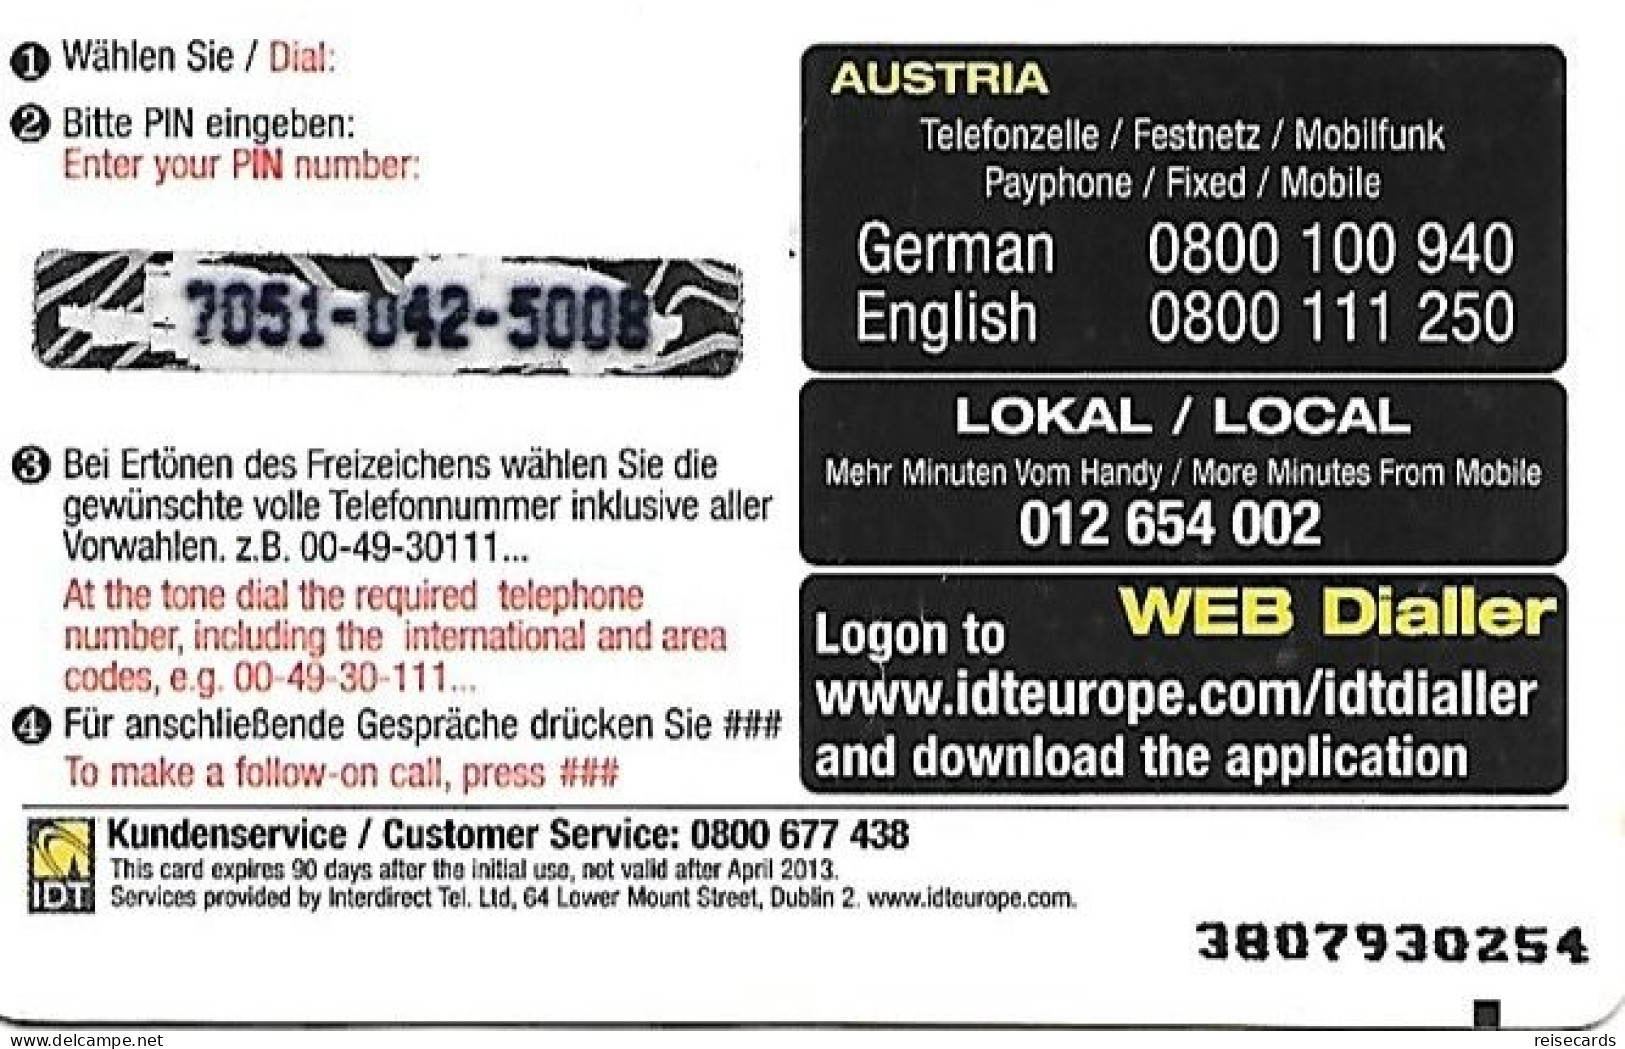 Austria: Prepaid IDT - Top Card 04.13 (SN Thick) - Oesterreich